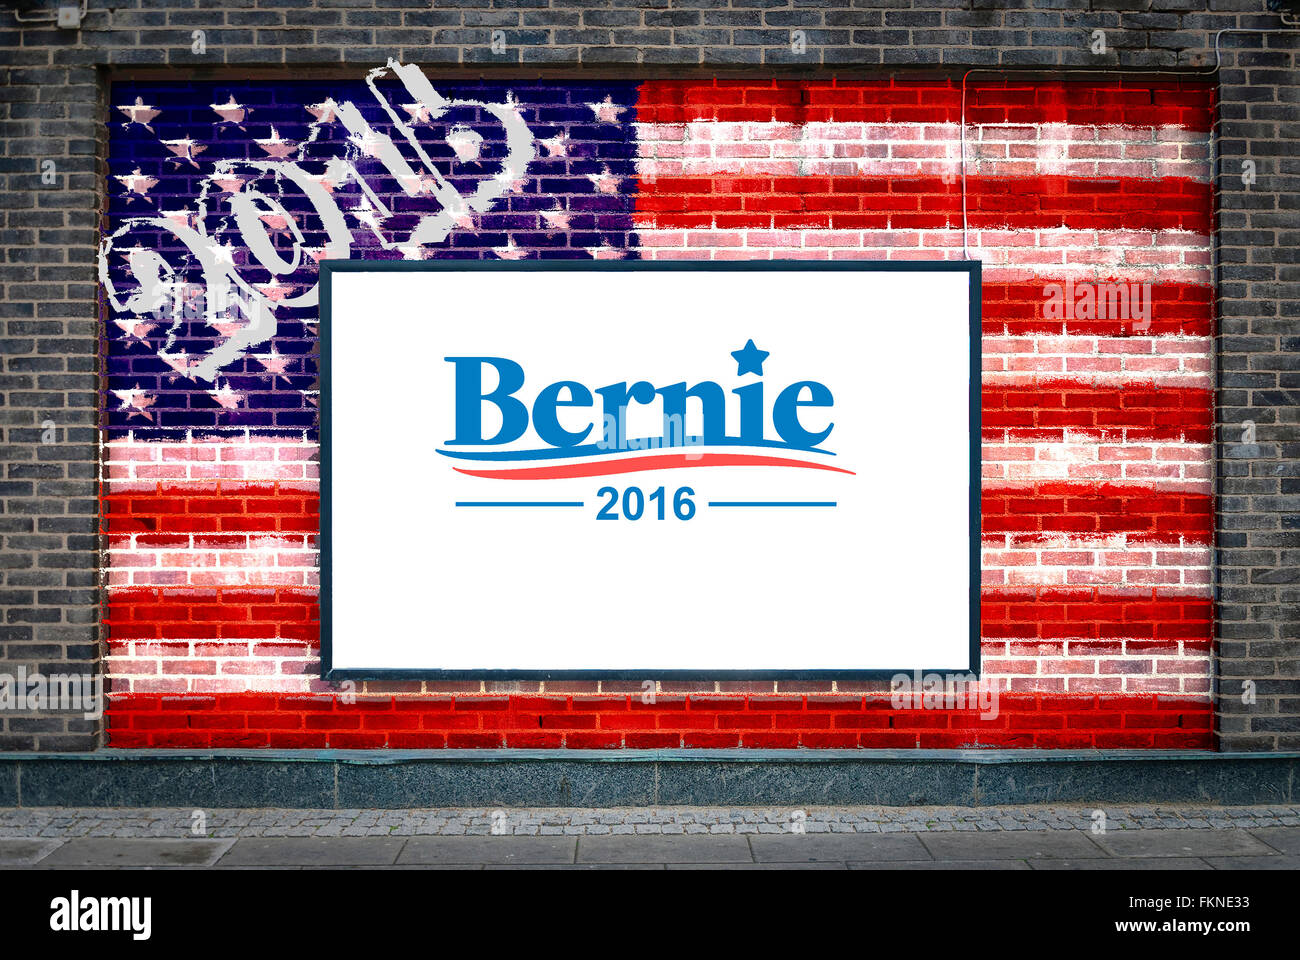 Bernie Sanders 2016 affiche de la campagne présidentielle sur un panneau peint avec le drapeau américain Banque D'Images